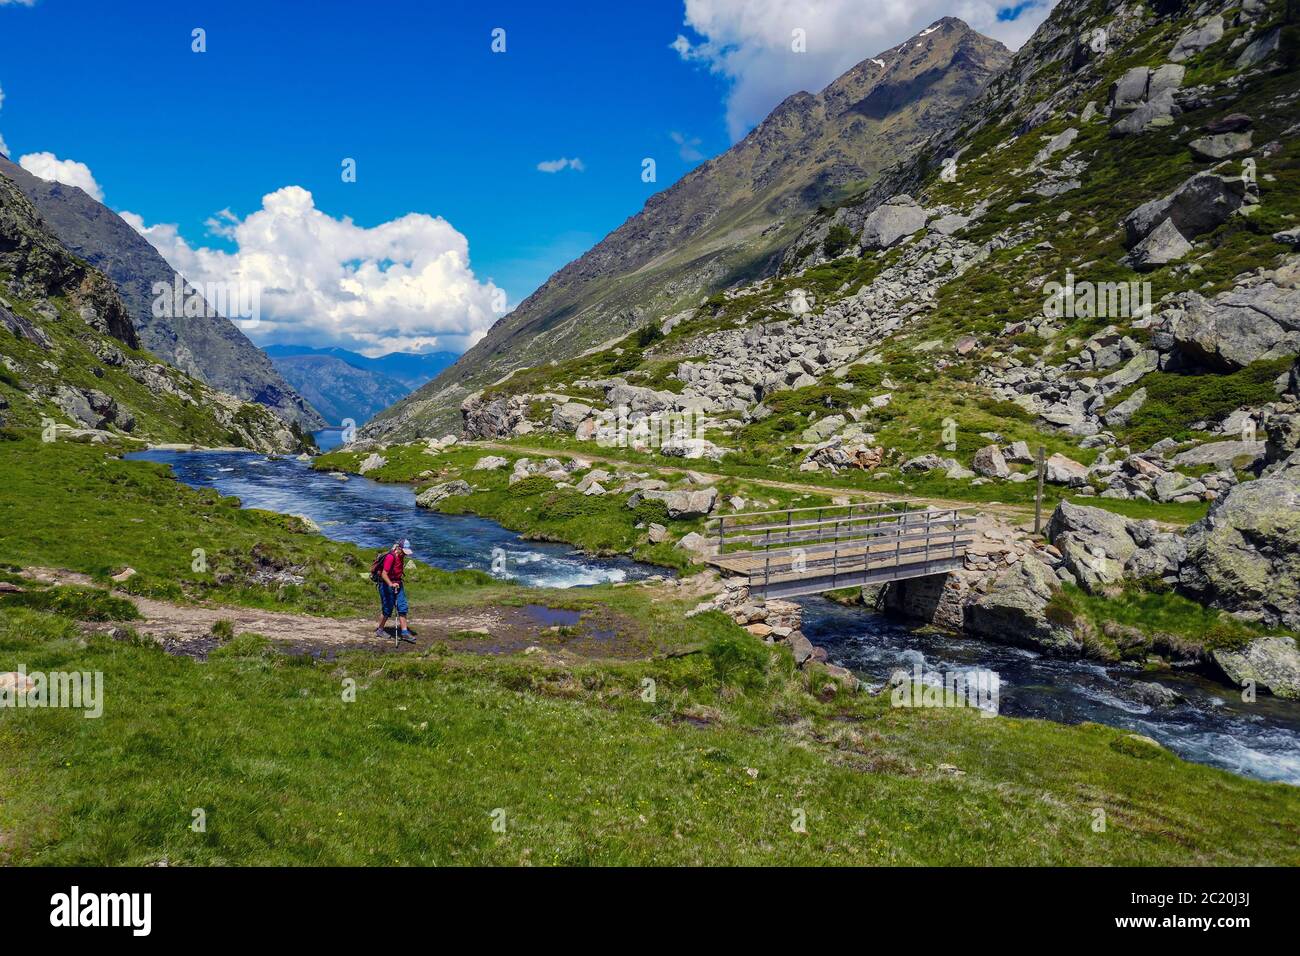 Einsame weibliche Wanderer mit Bach mit Kaskaden fließt durch das Soulcem Tal in den französischen Pyrenäen, Ariege Region, Frankreich, Pyrenäen Berge Stockfoto